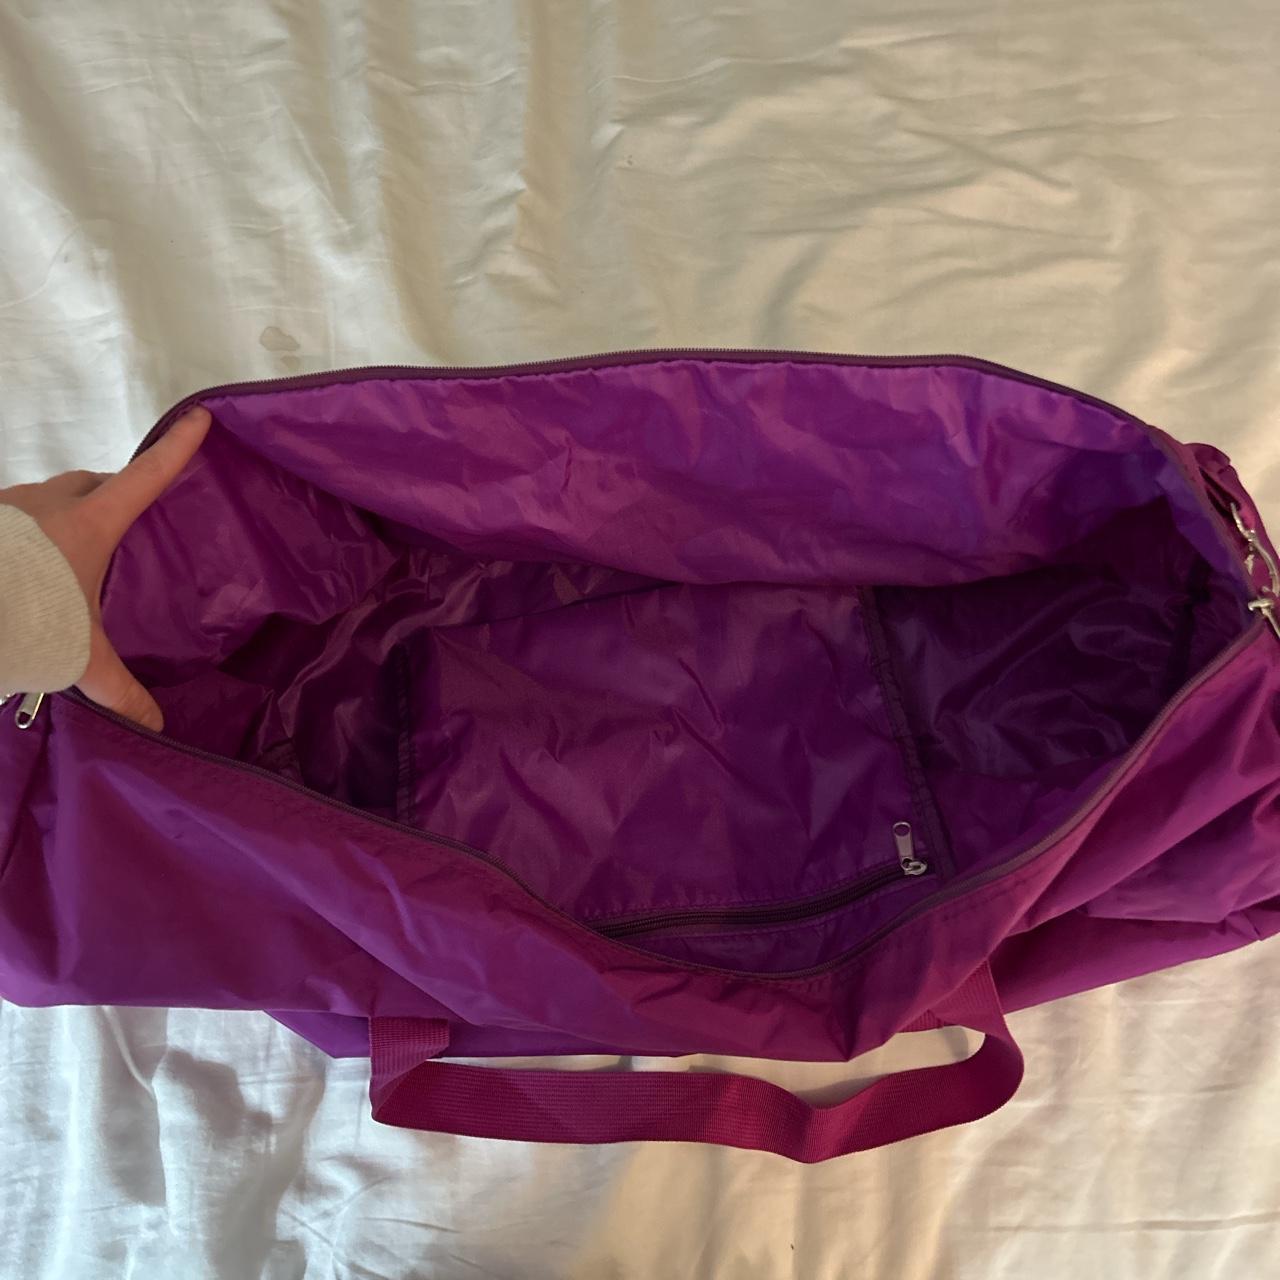 Huge purple duffle bag - LOTS of space! - Depop